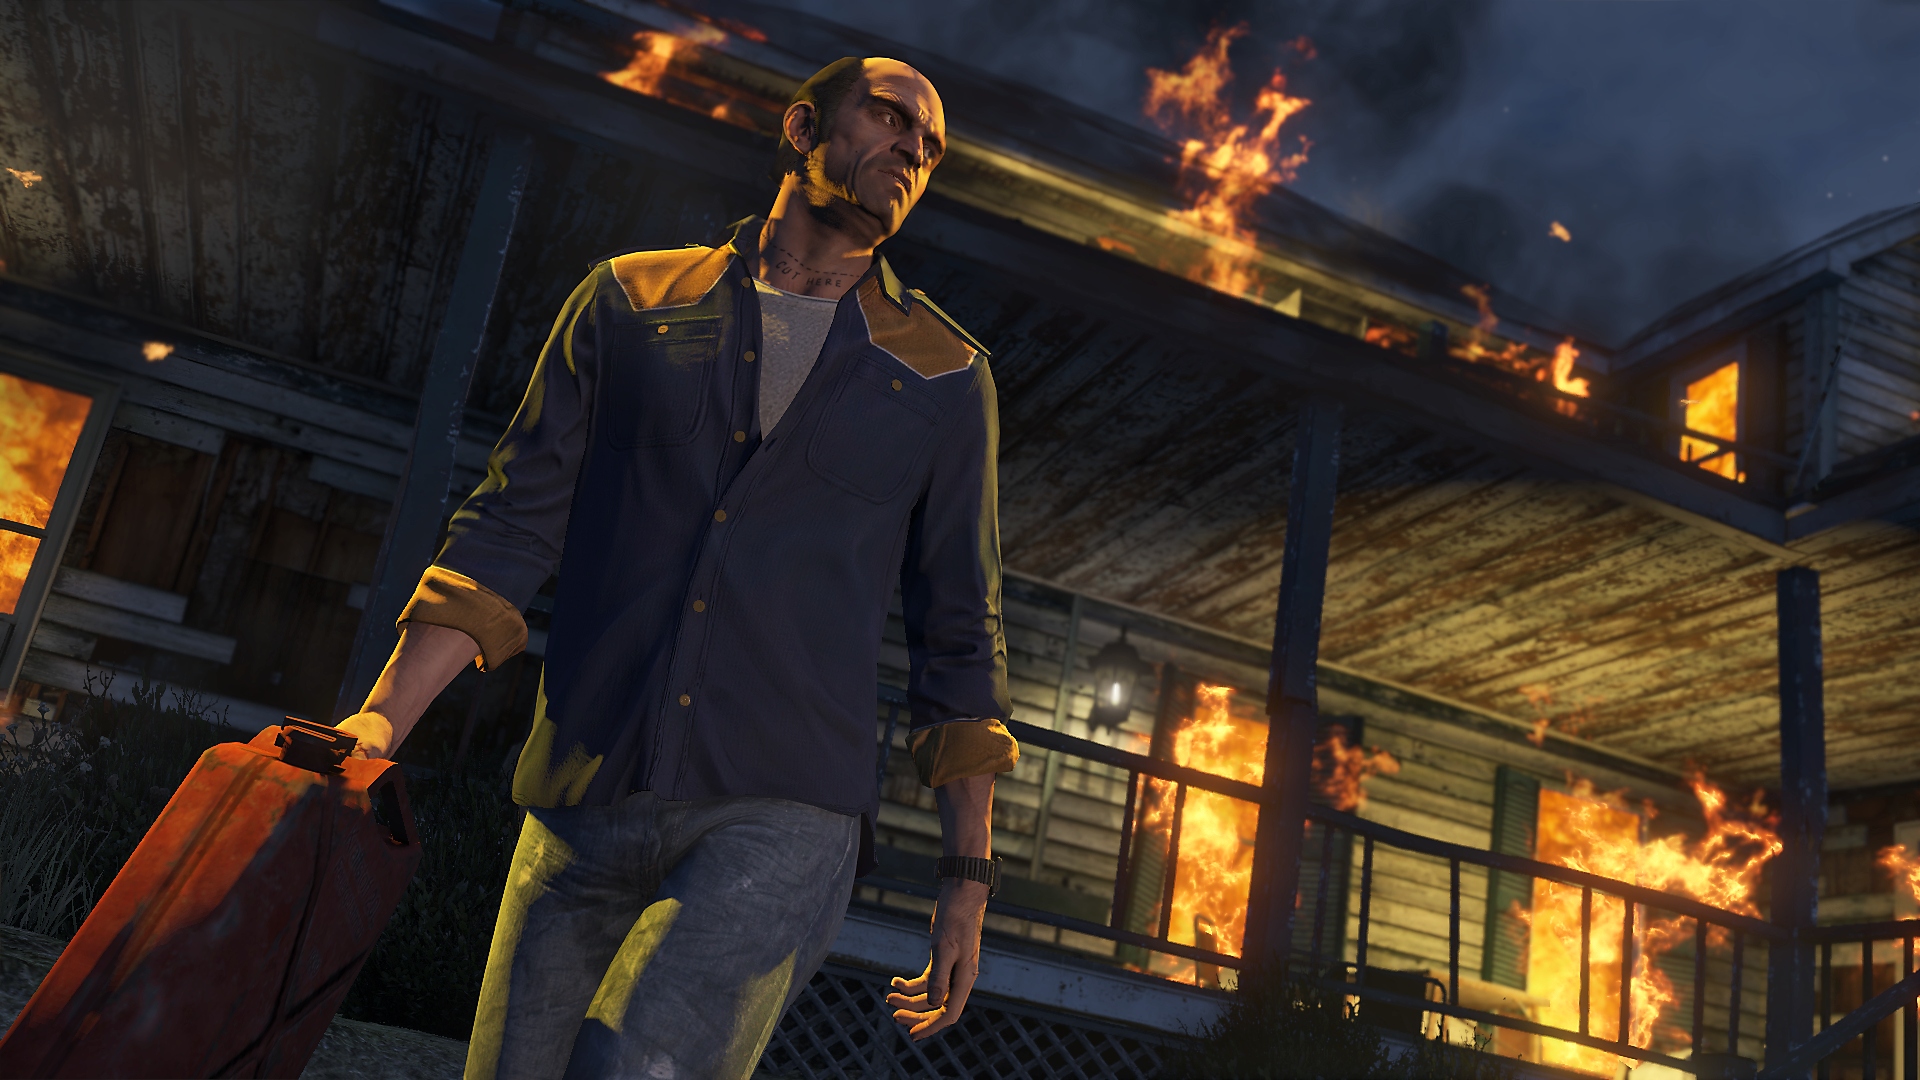 Grand Theft Auto V - Istantanea della schermata che mostra il protagonista, Trevor, che si allontana da un edificio in fiamme con in mano una tanica di benzina